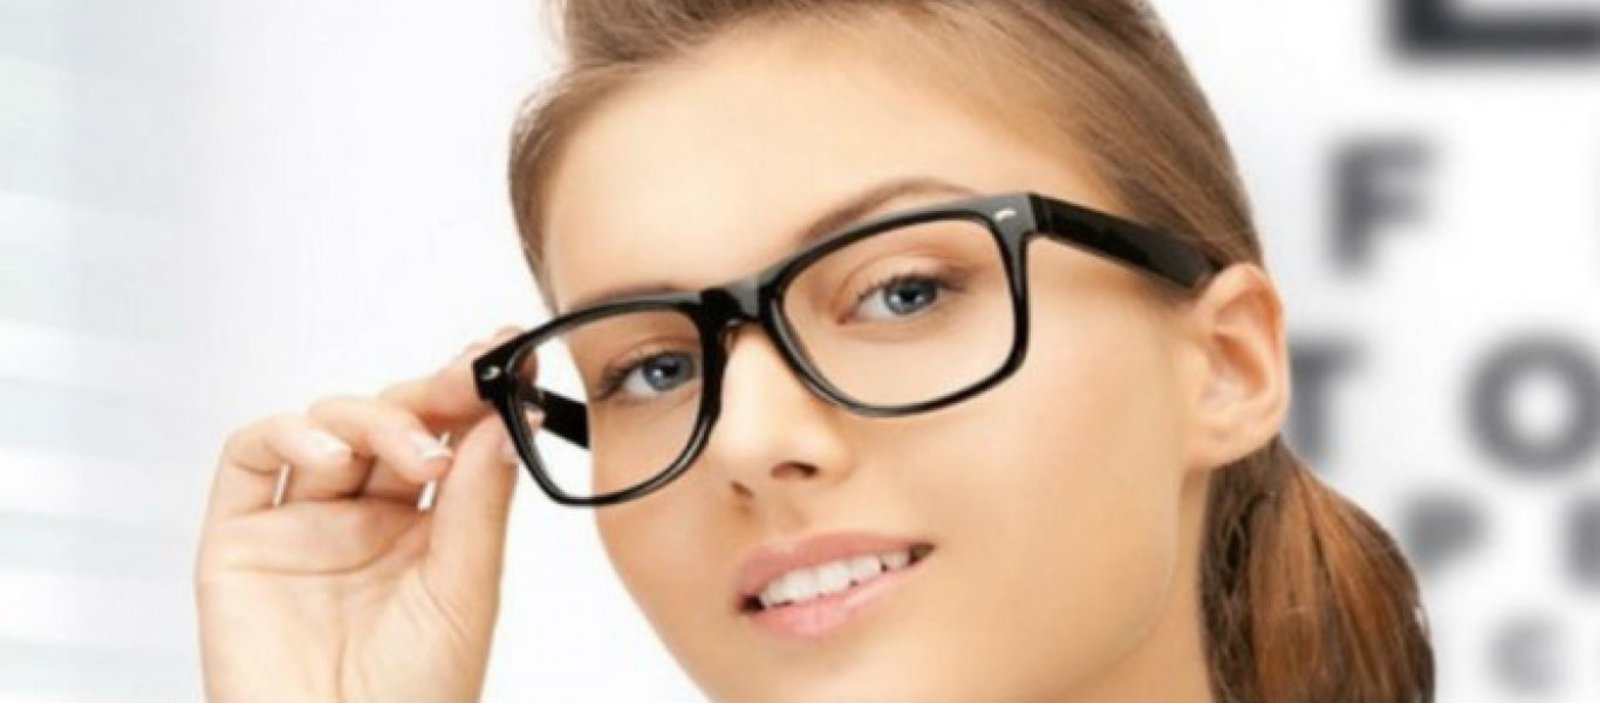 Зрение 10 20. Оптика очки для зрения. Оправы для очков детские для зрения. Оптика в очках. Реклама очков.